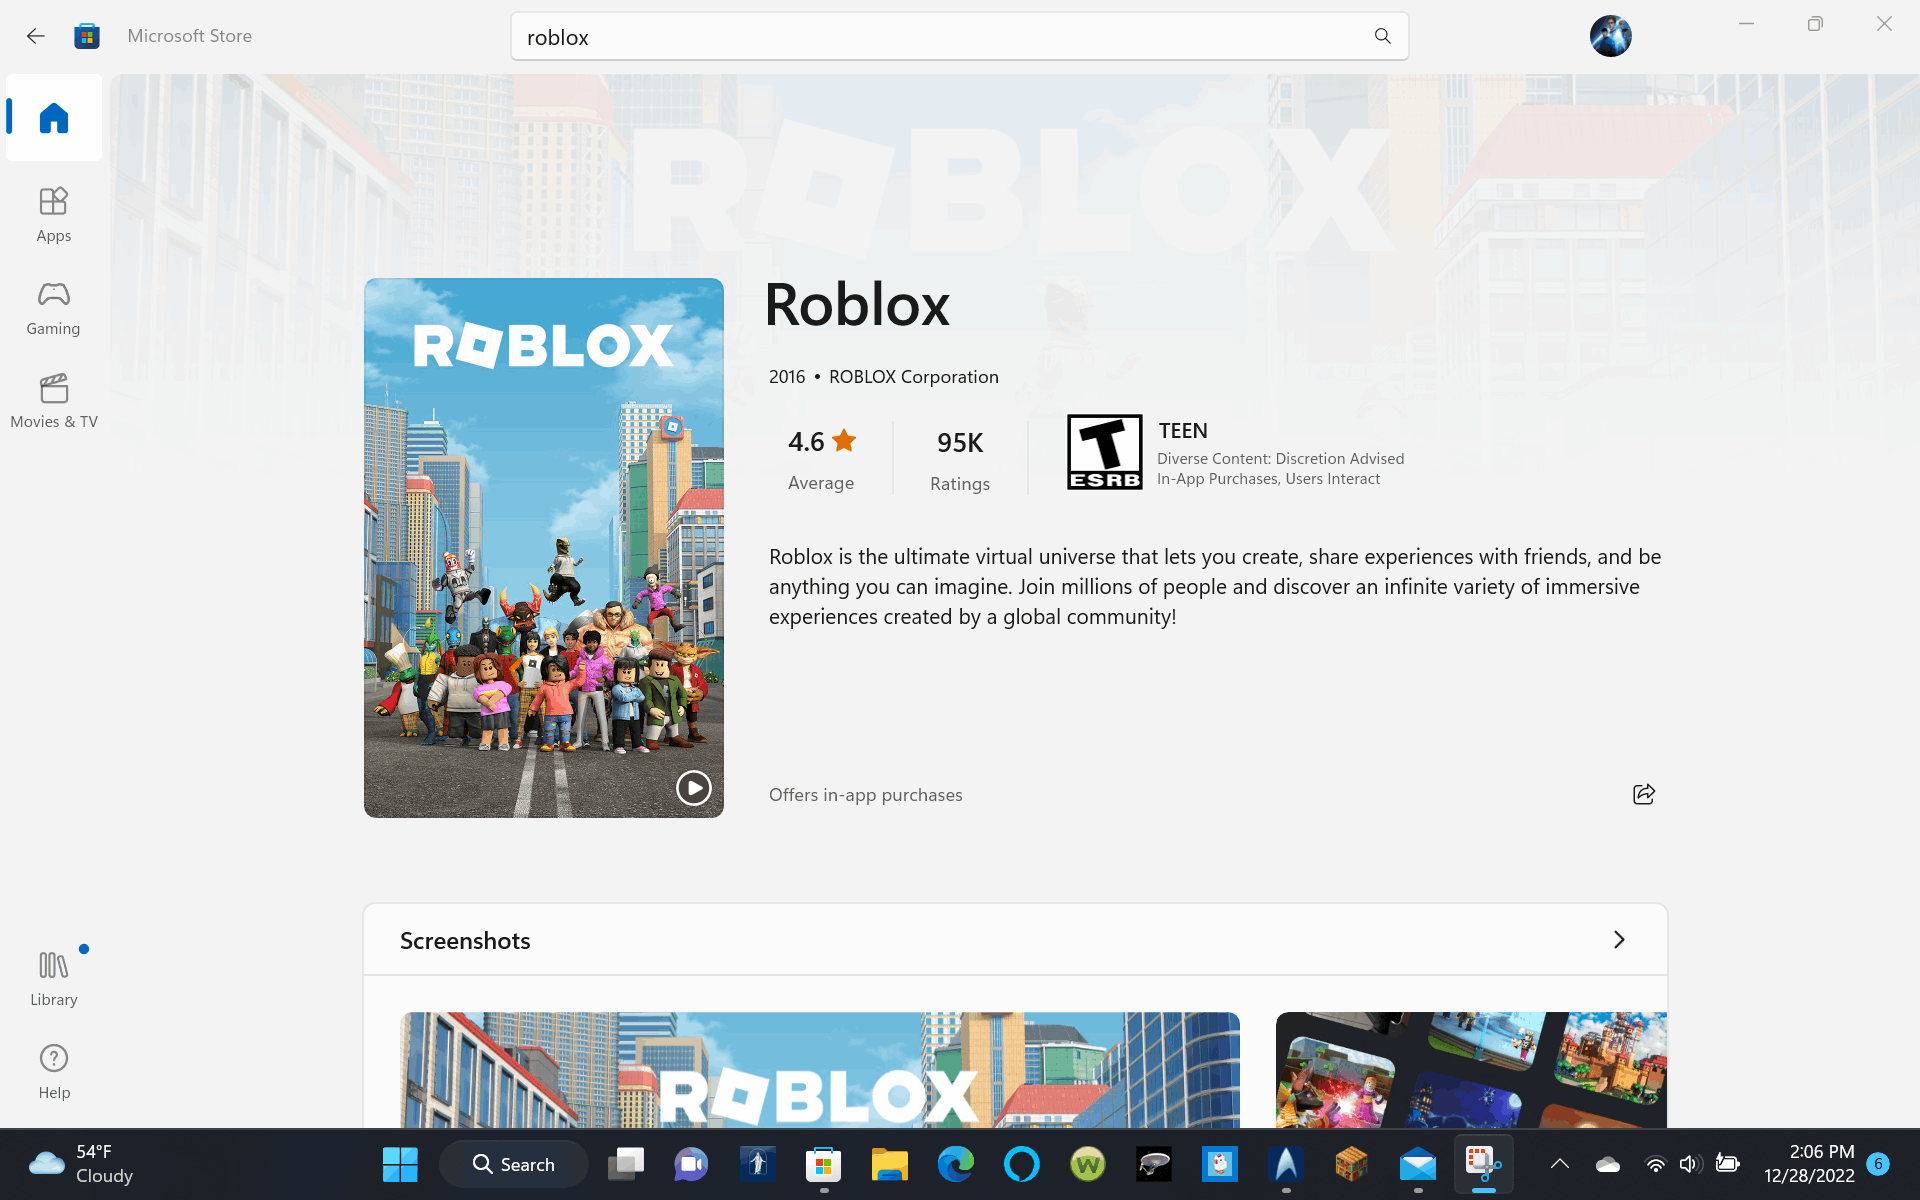 NAO CONSIGO ABRIR O ROBLOX - Microsoft Community